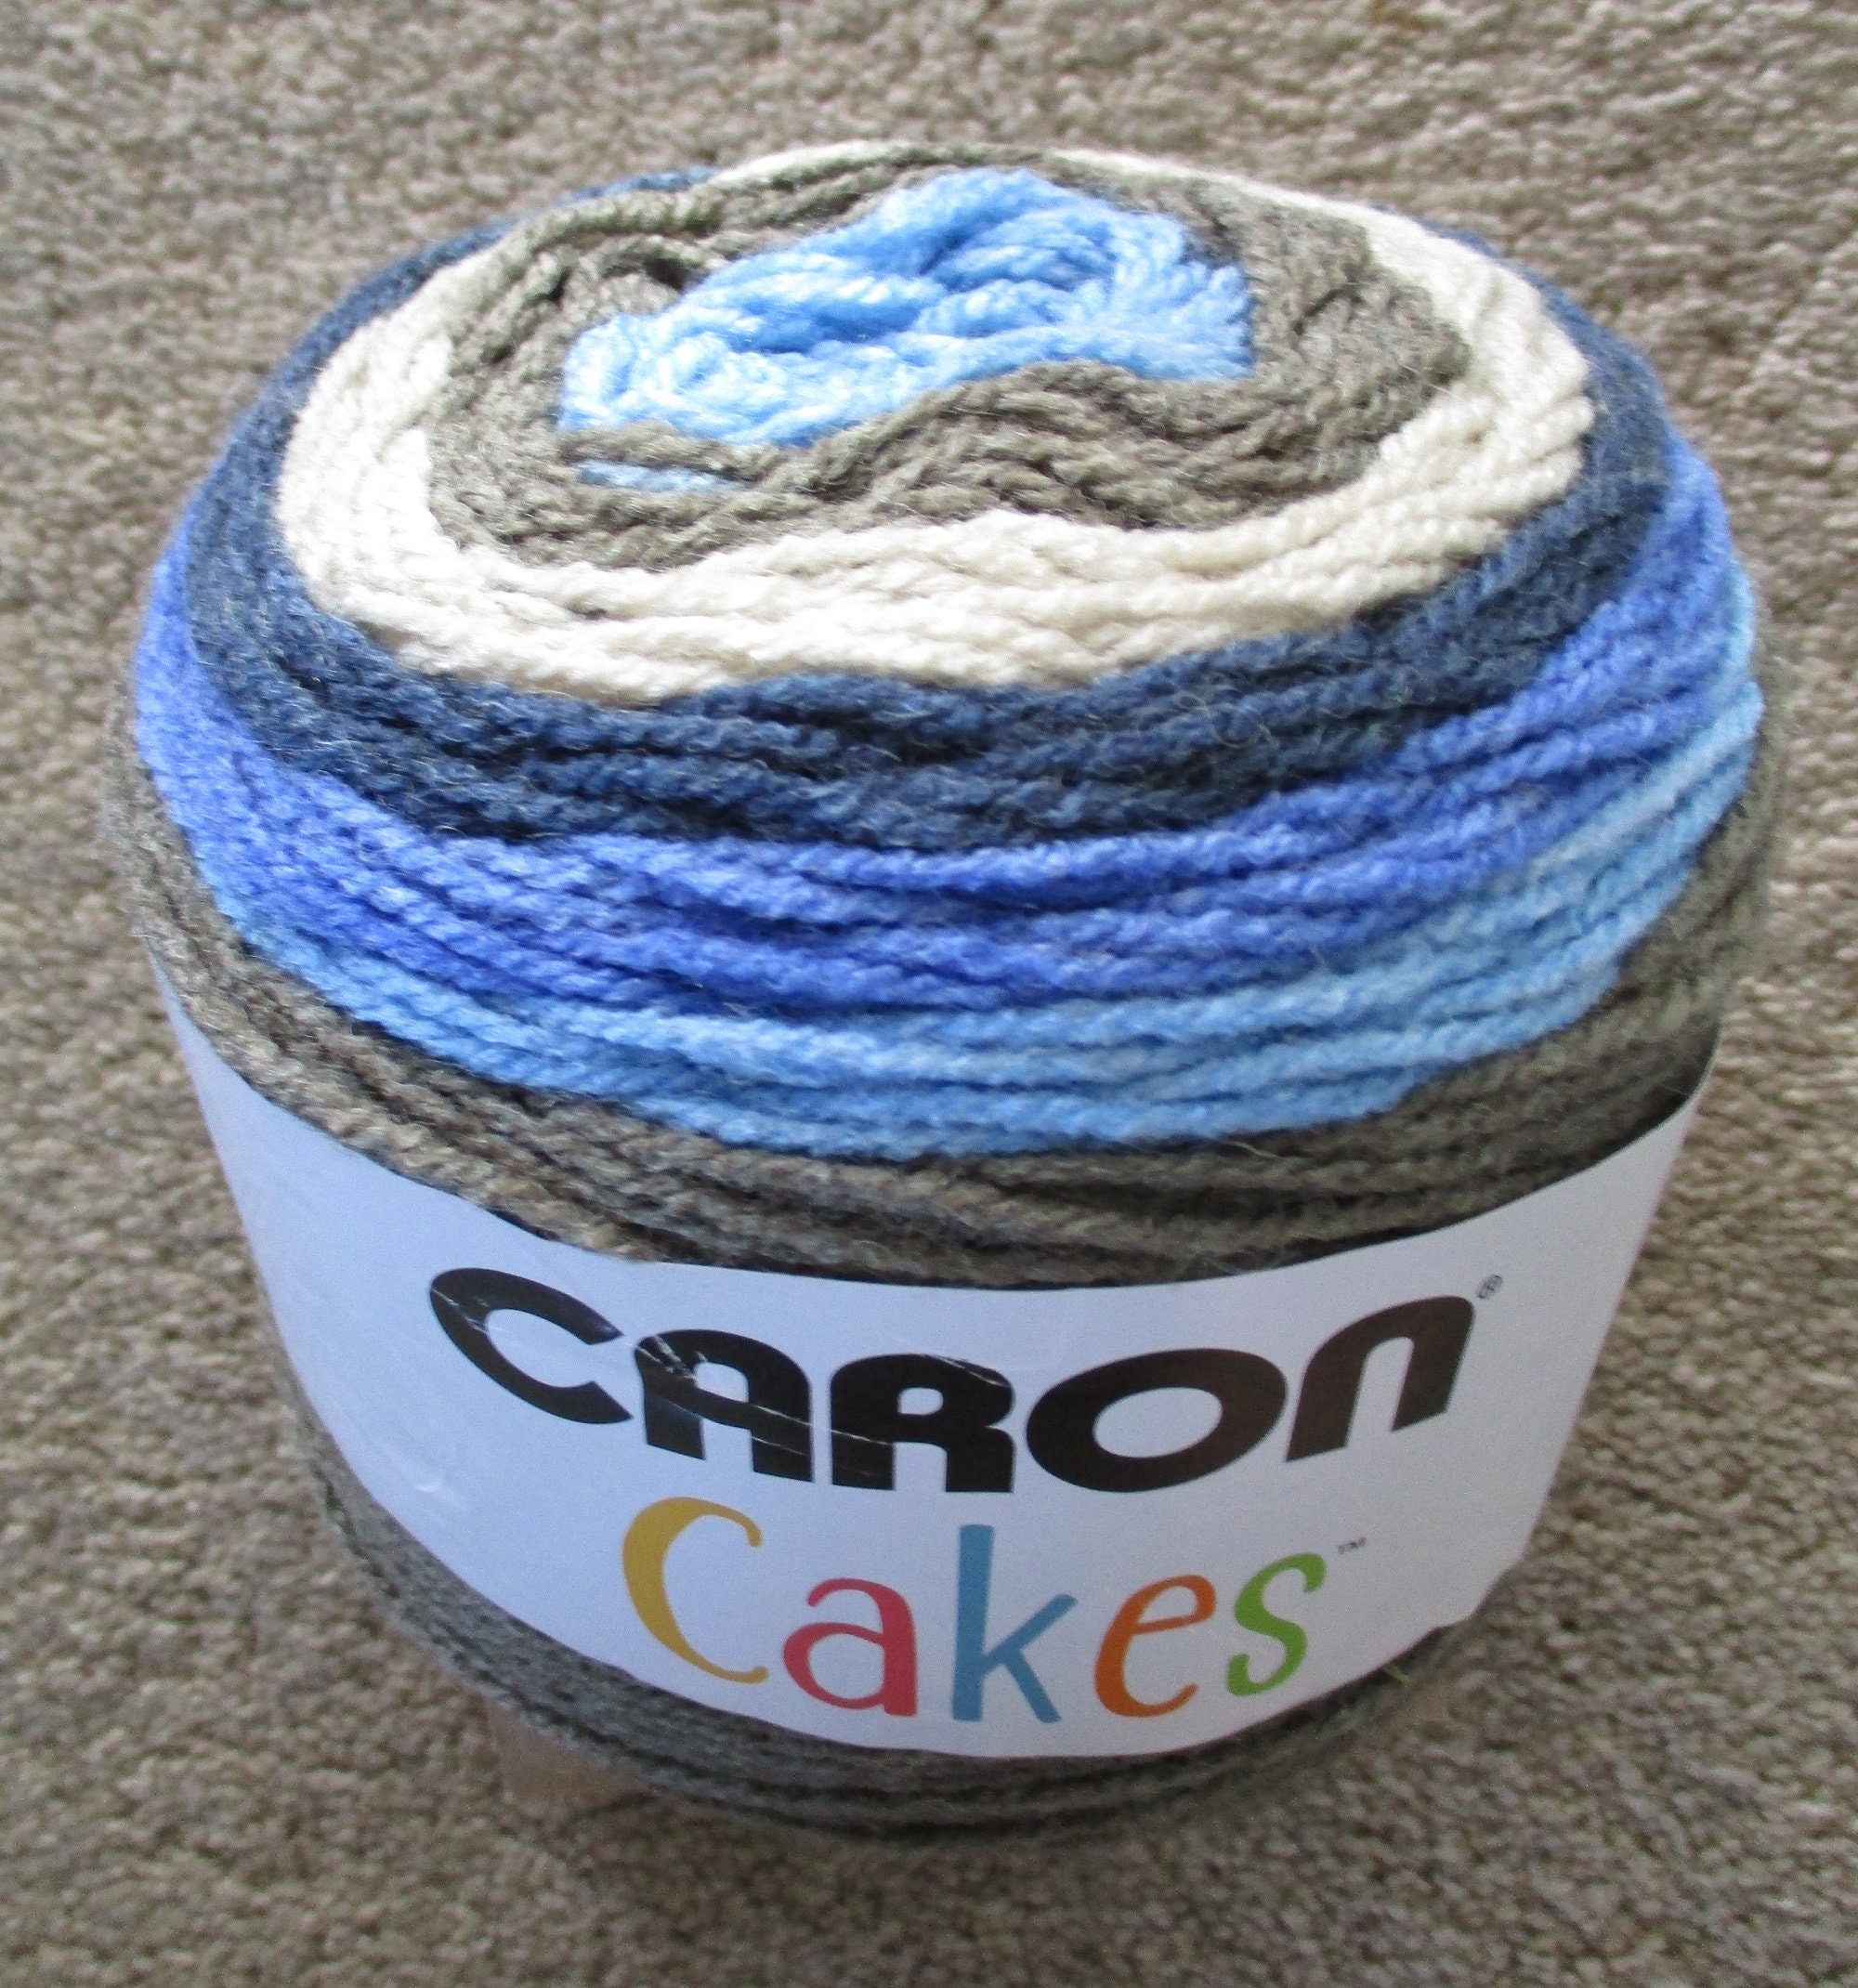 DESTASHING Caron Anniversary Cake in REEF BLUE 